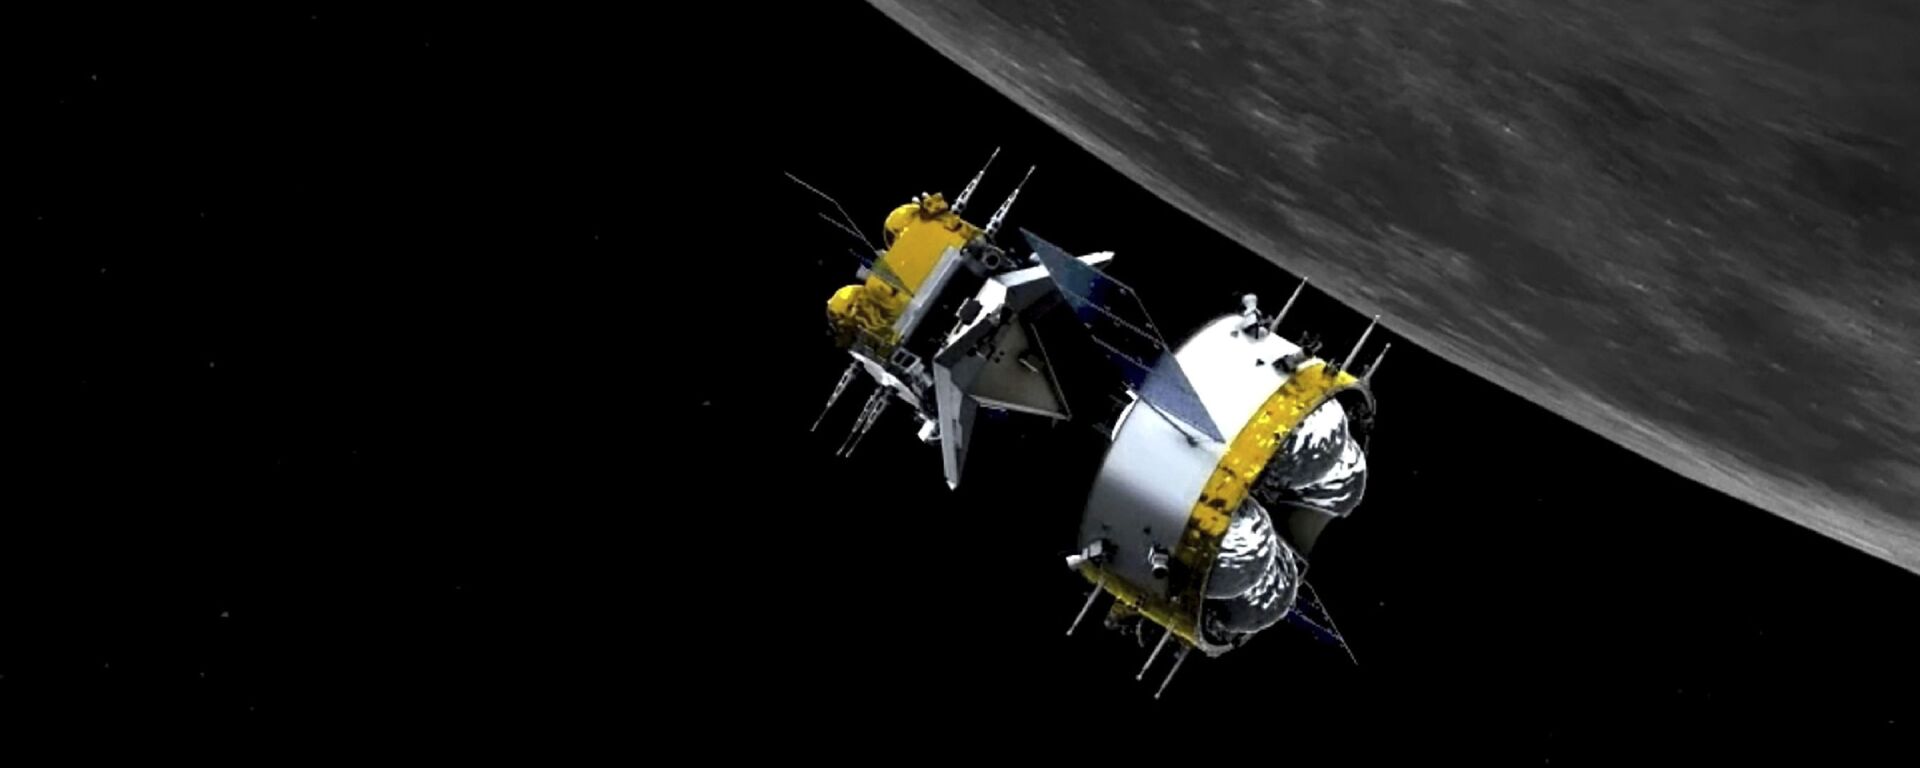   مسبار فضائي تشانغ آه-5 لجمع عينات من القمر وإعادتها، الصين 6 ديسمبر 2020 - سبوتنيك عربي, 1920, 17.09.2022